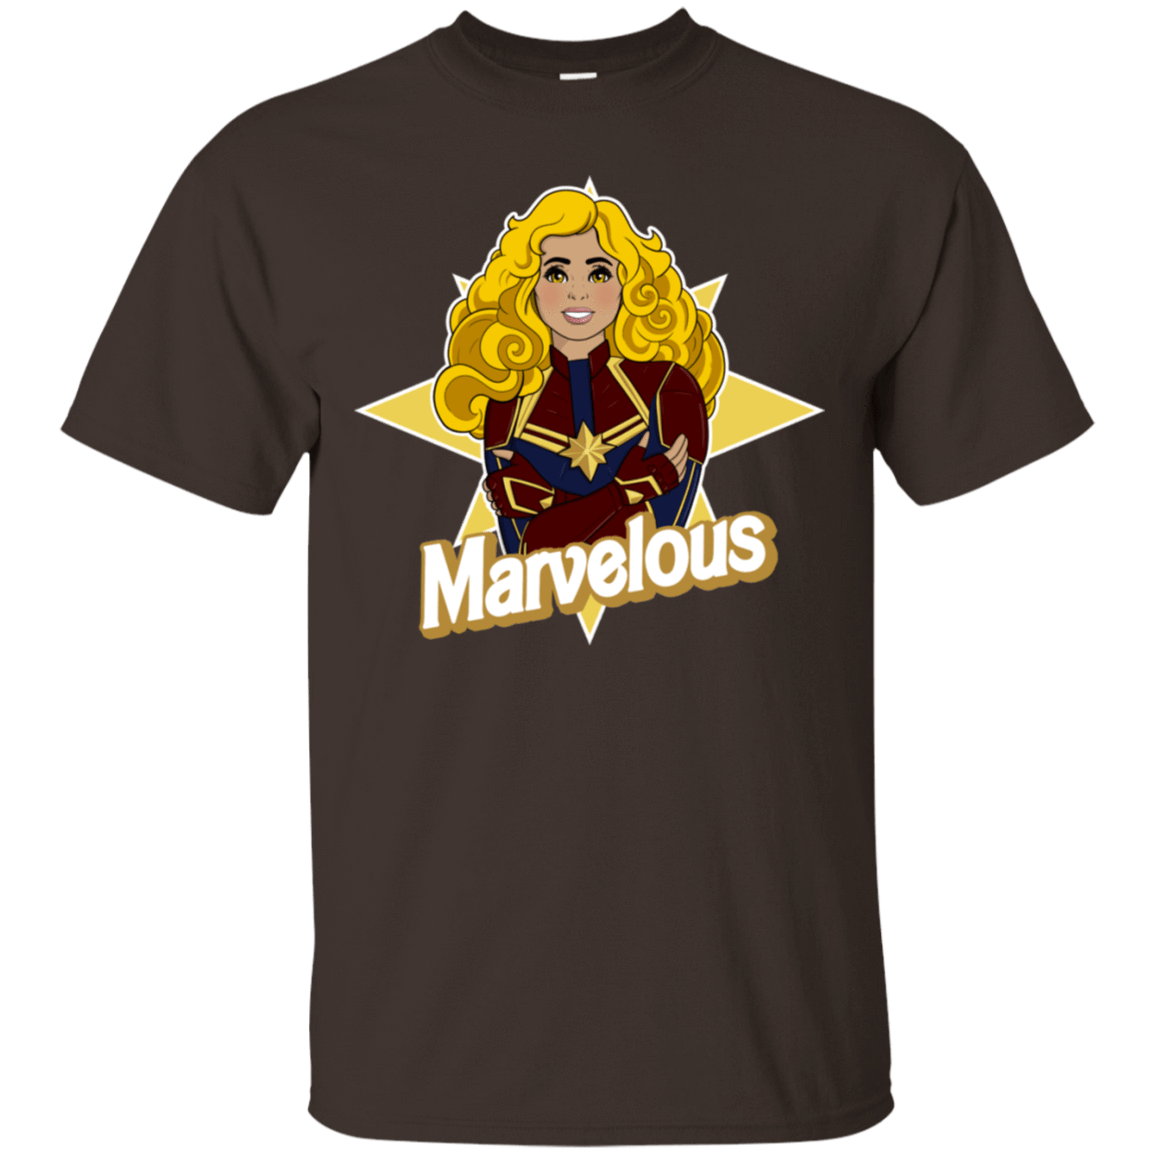 T-Shirts Dark Chocolate / S Marvelous T-Shirt